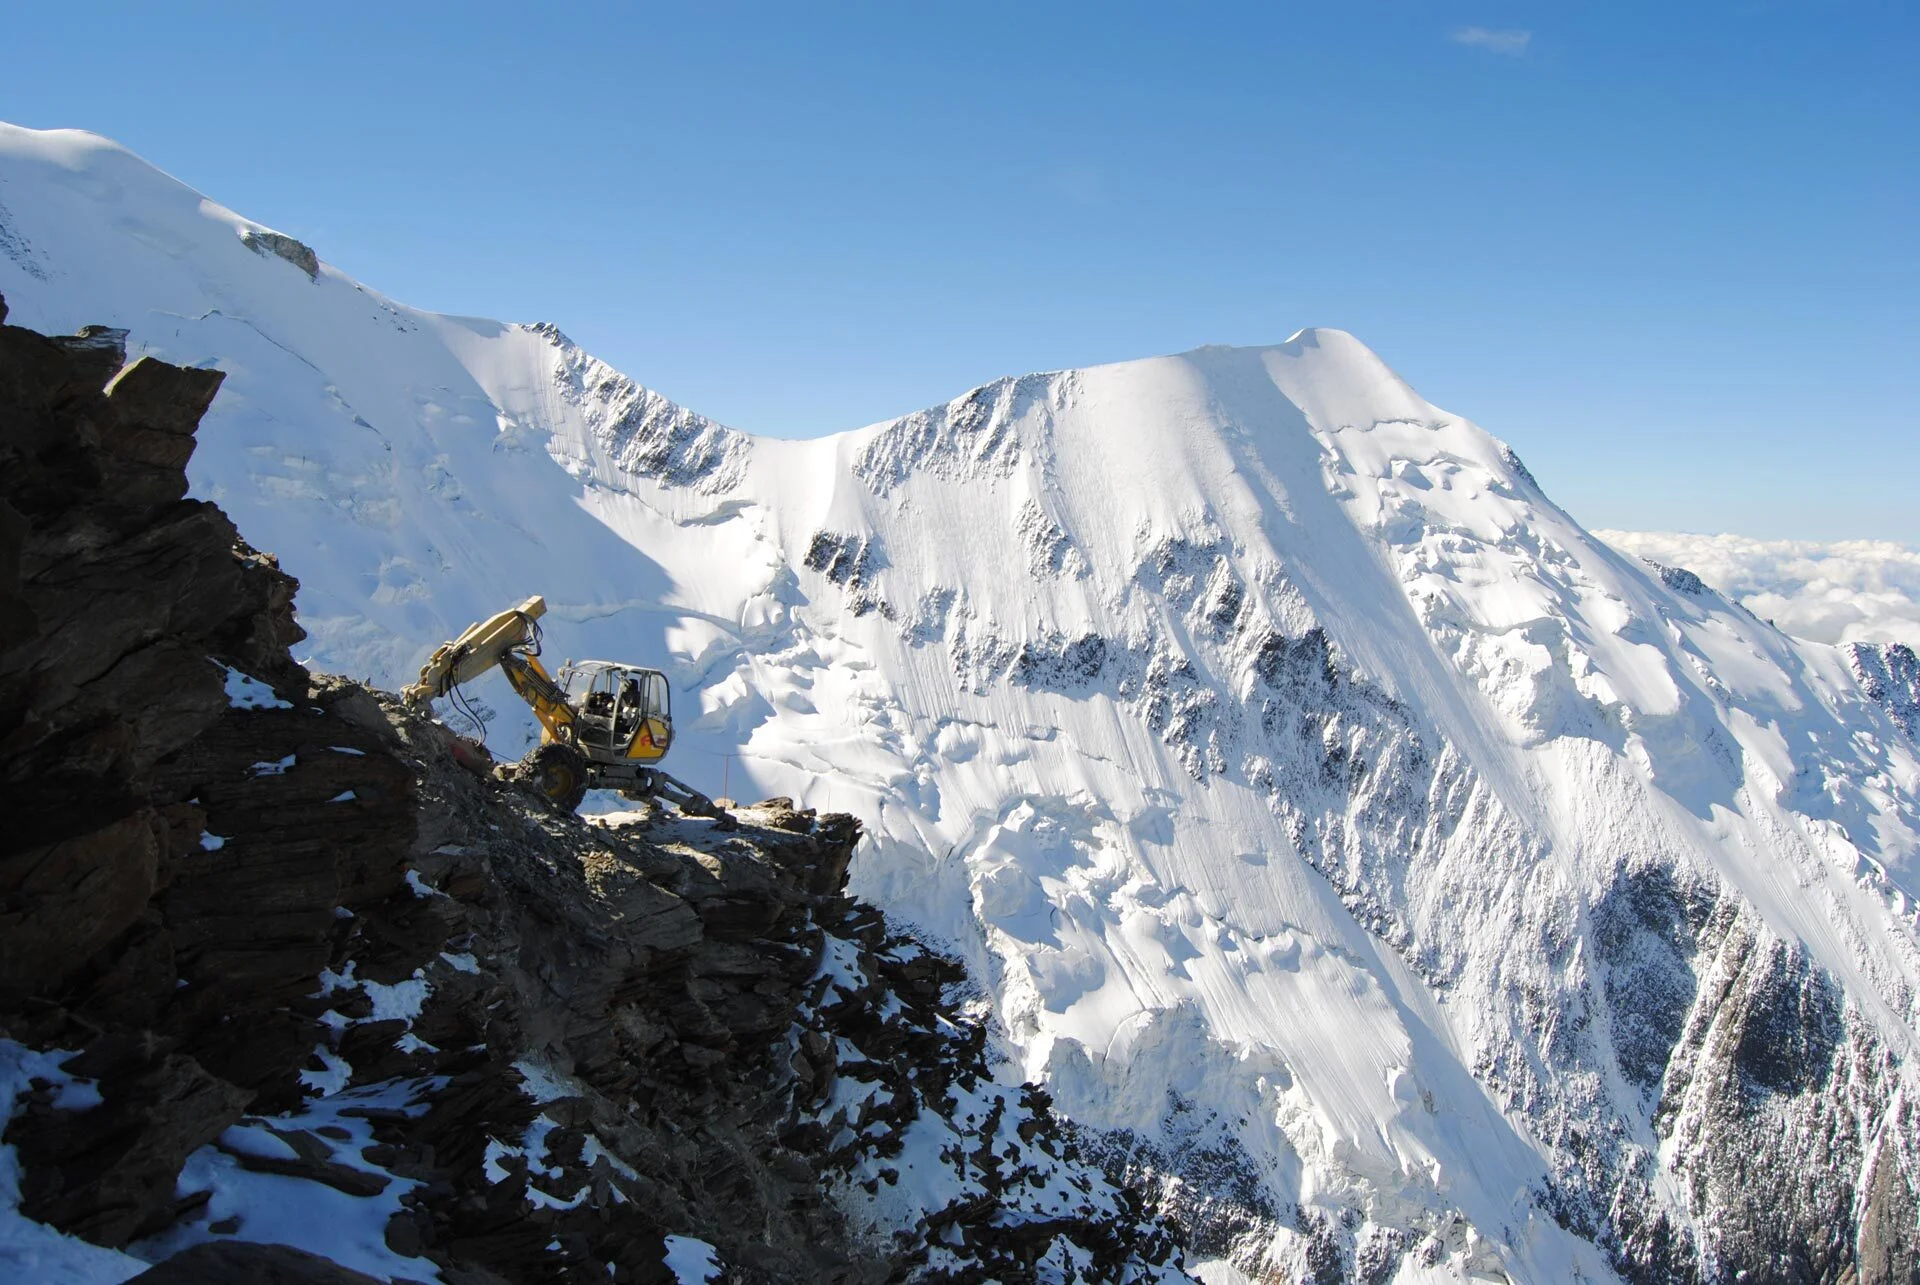 Image de fond montrant une pelle araignée sur une montagne avec le mont blanc en fond